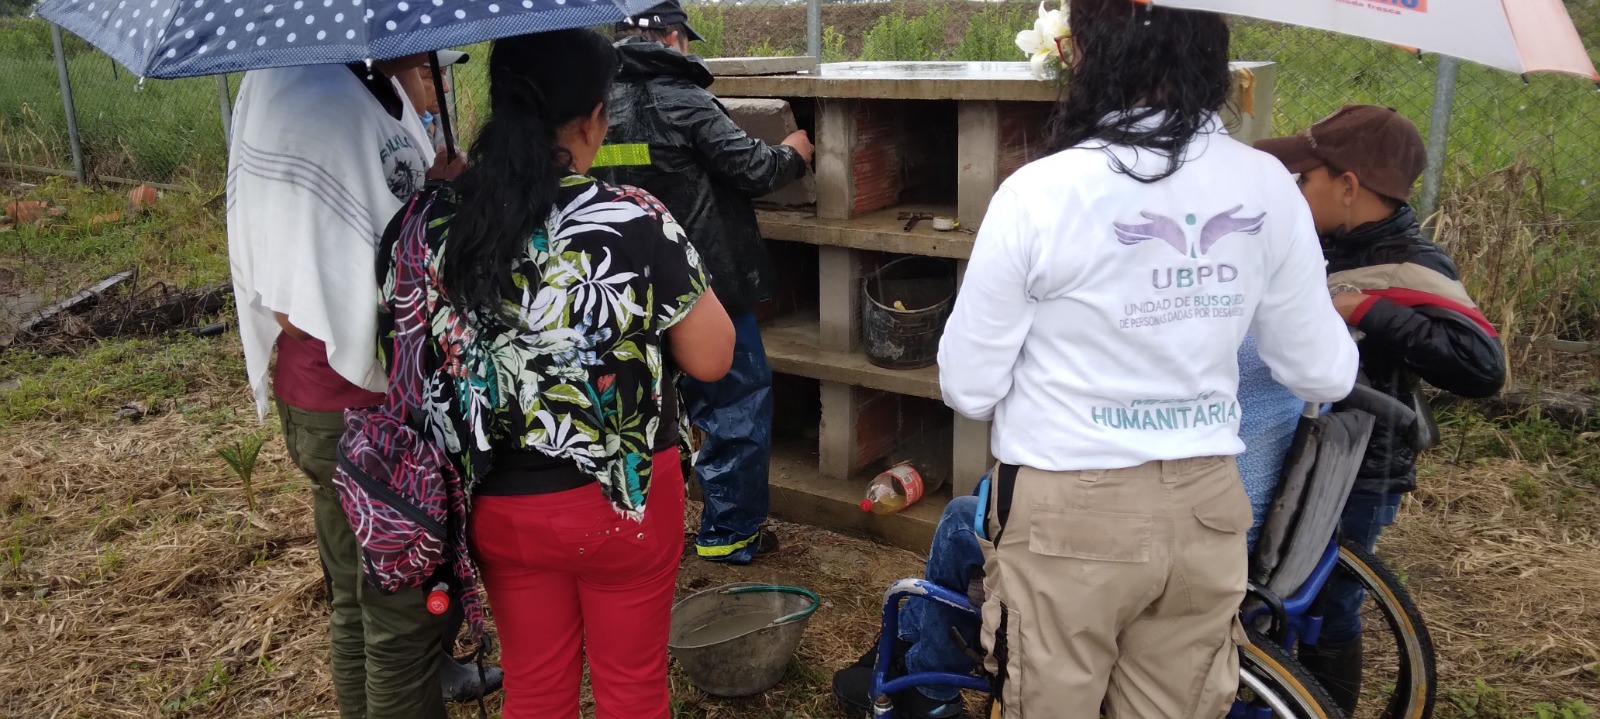 UBPD adelantó la entrega de una persona desaparecida en el municipio de Uribe 1